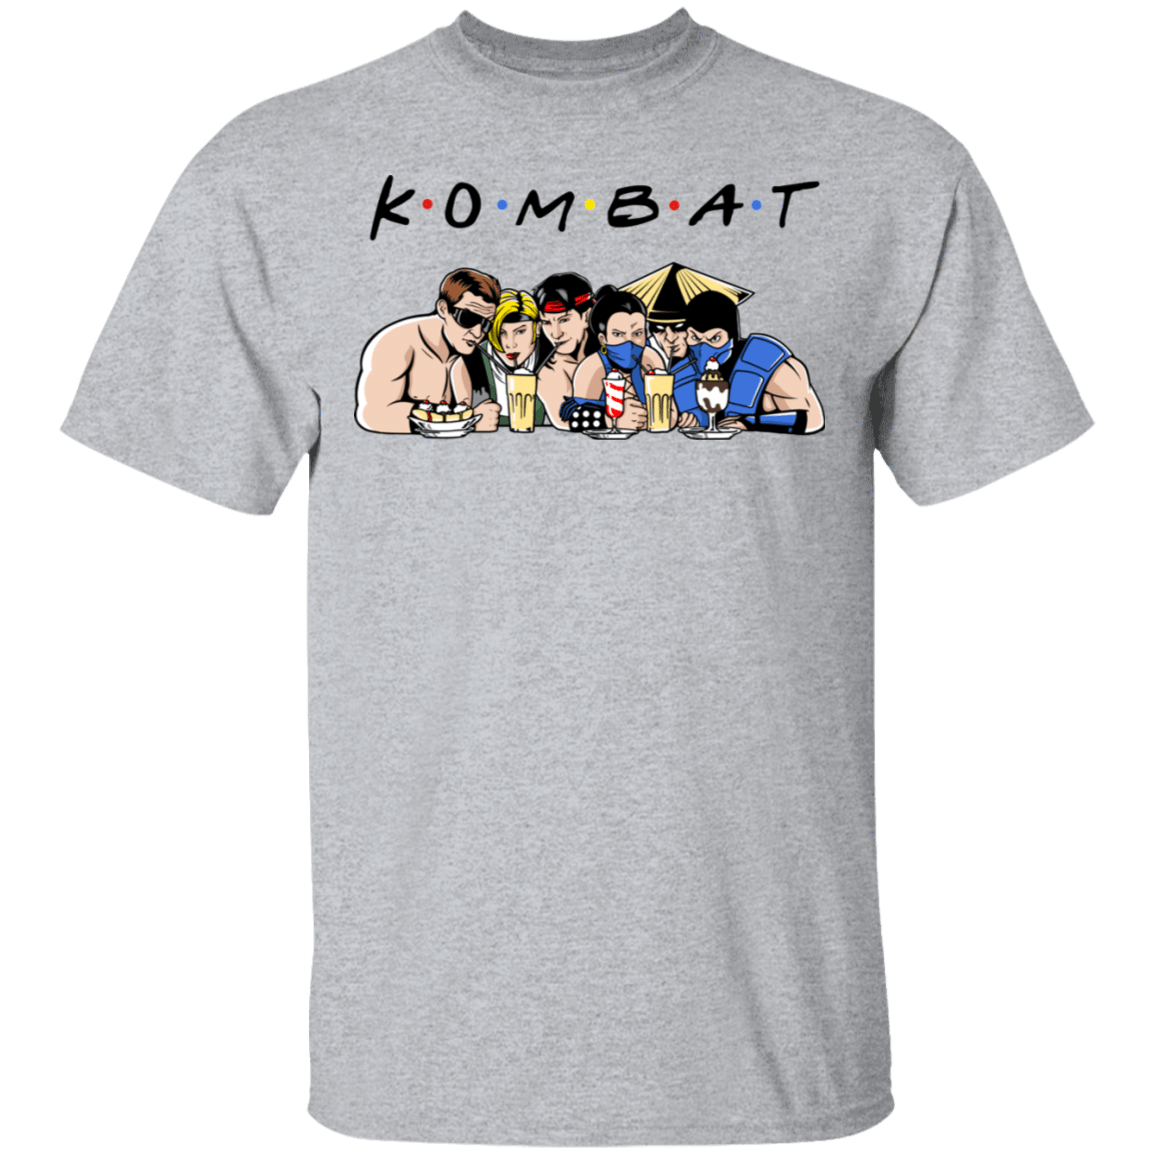 T-Shirts Sport Grey / S Kombat Friends T-Shirt